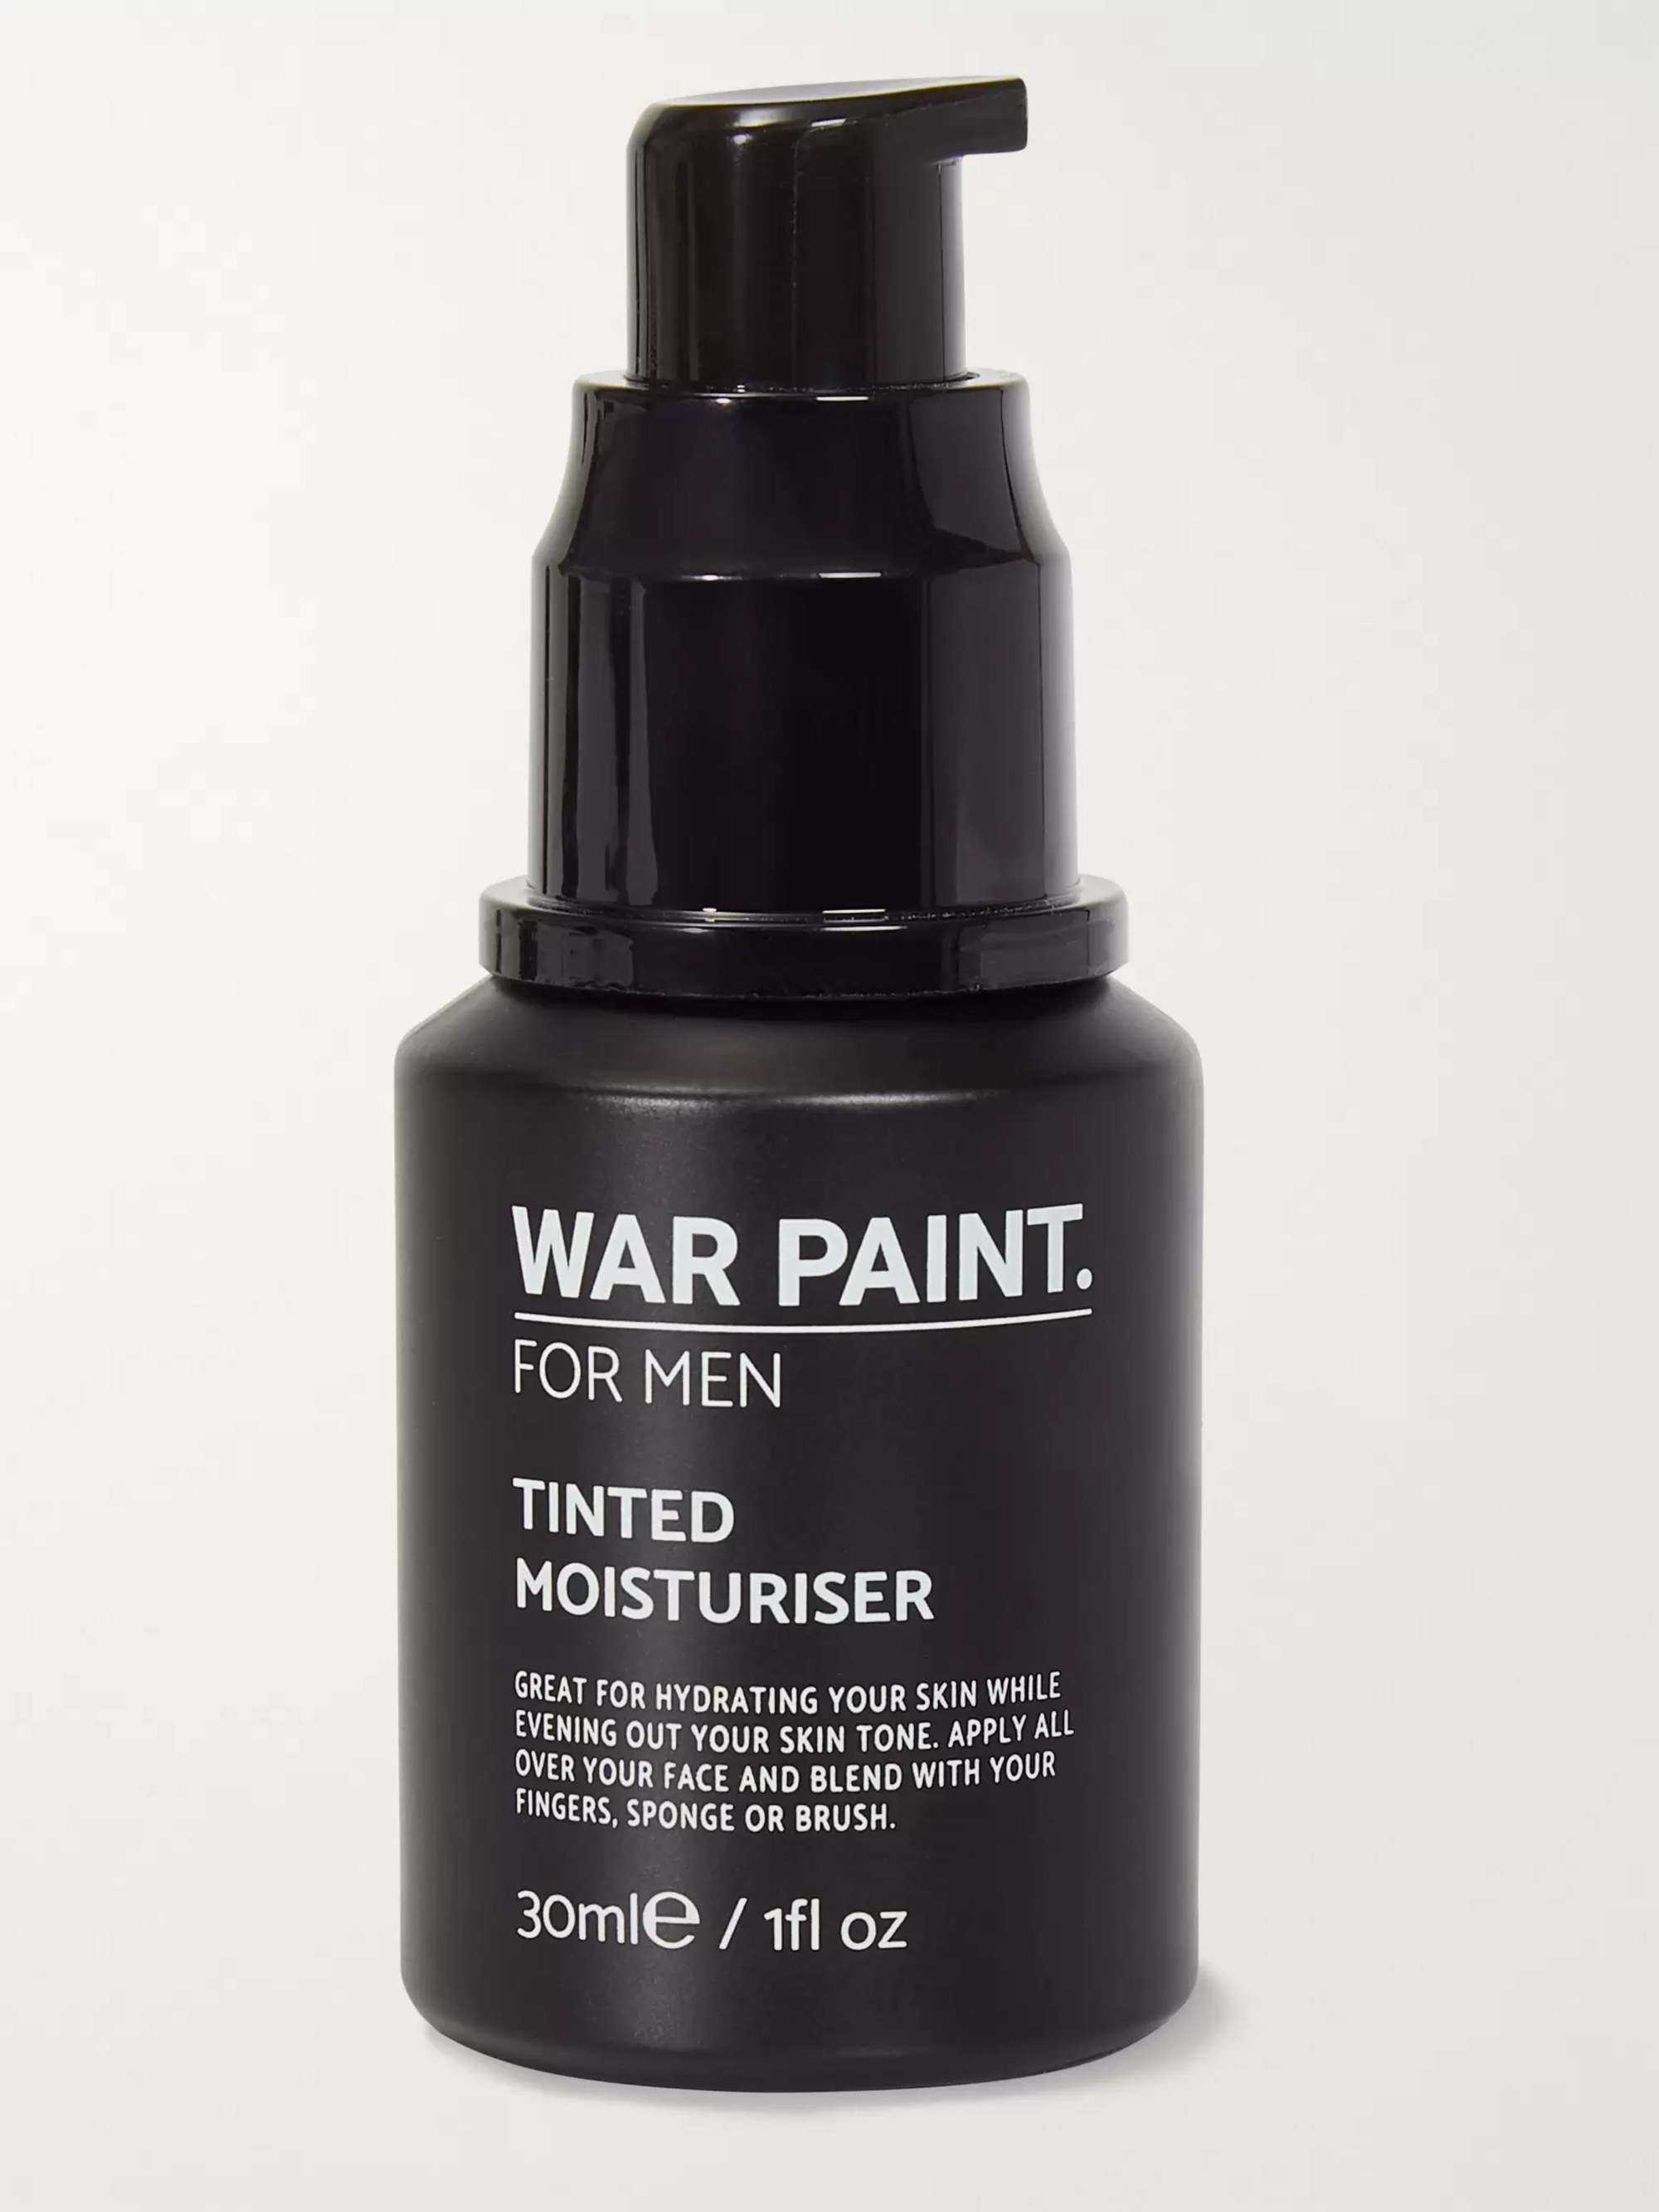 WAR PAINT FOR MEN Tinted Moisturiser - Tan, 30ml